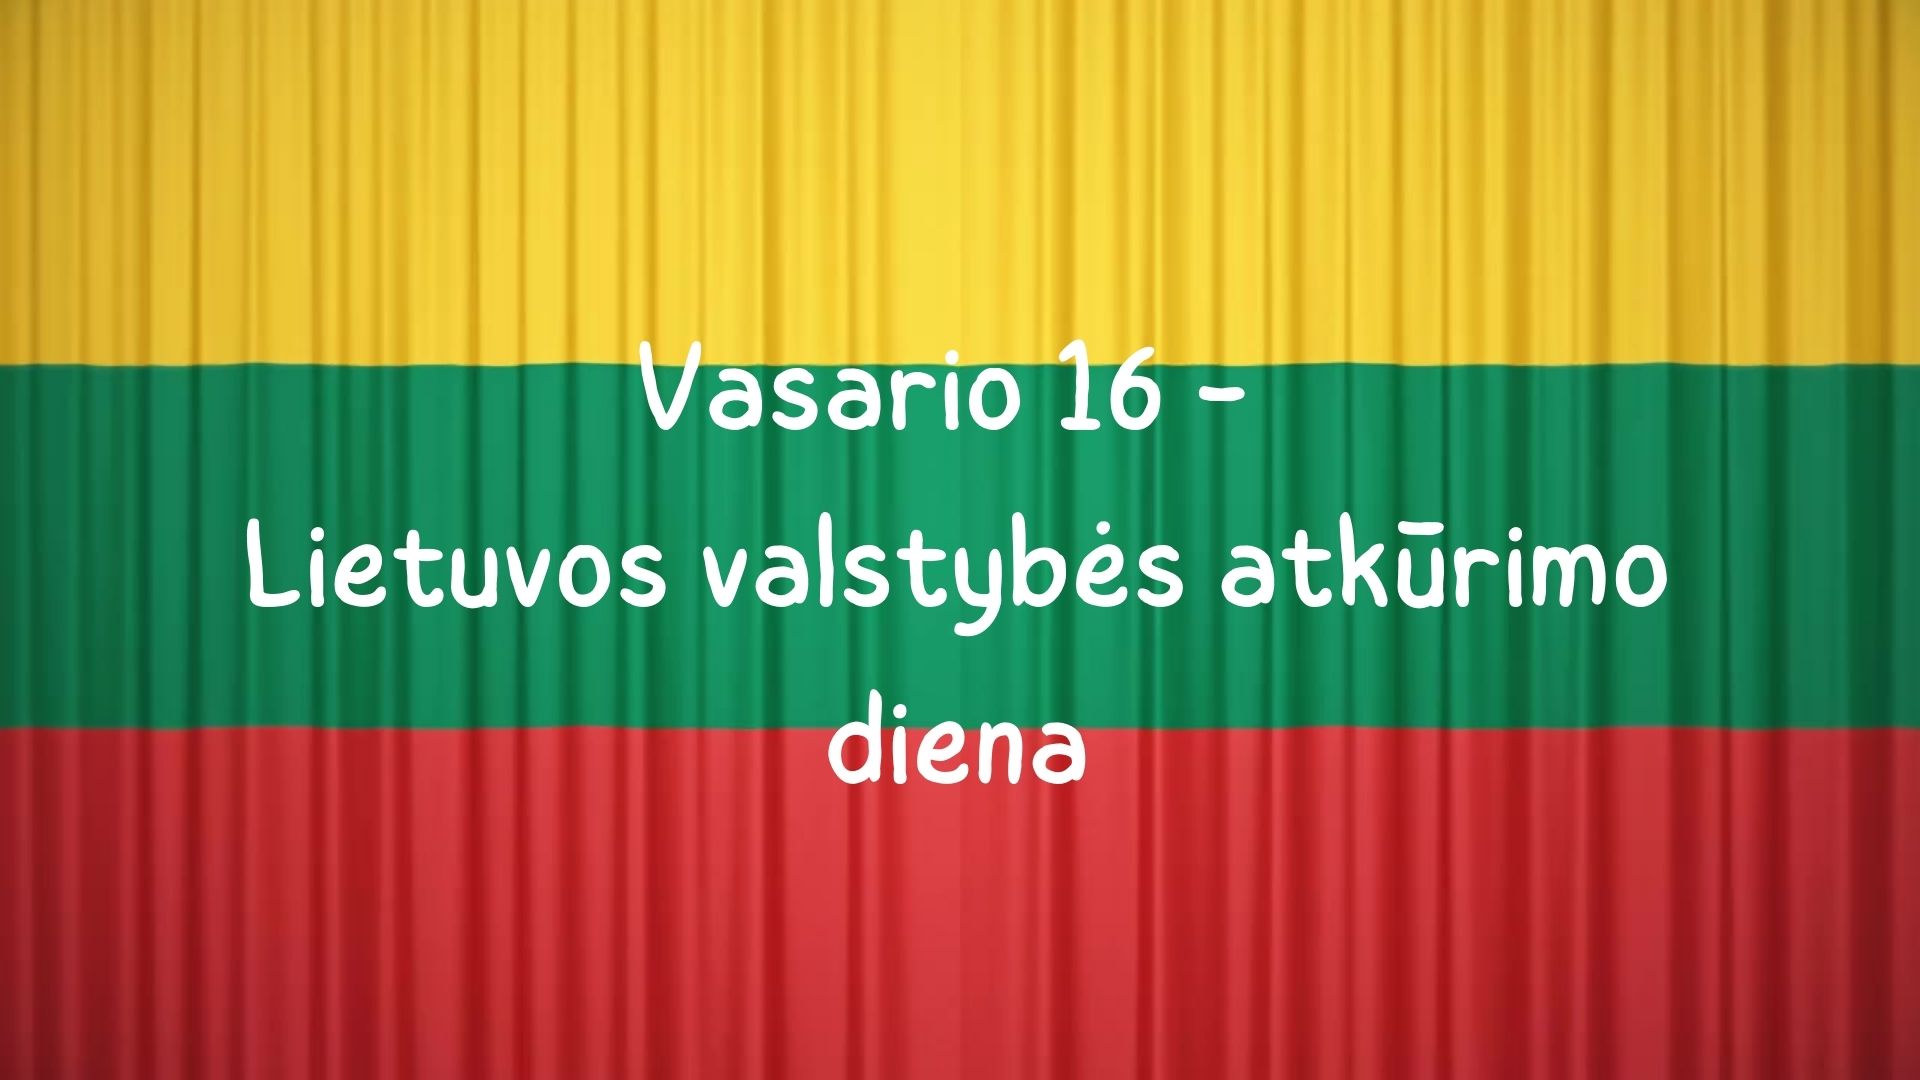 Vasario 16 diena - Lietuvos valstybės atkūrimo diena